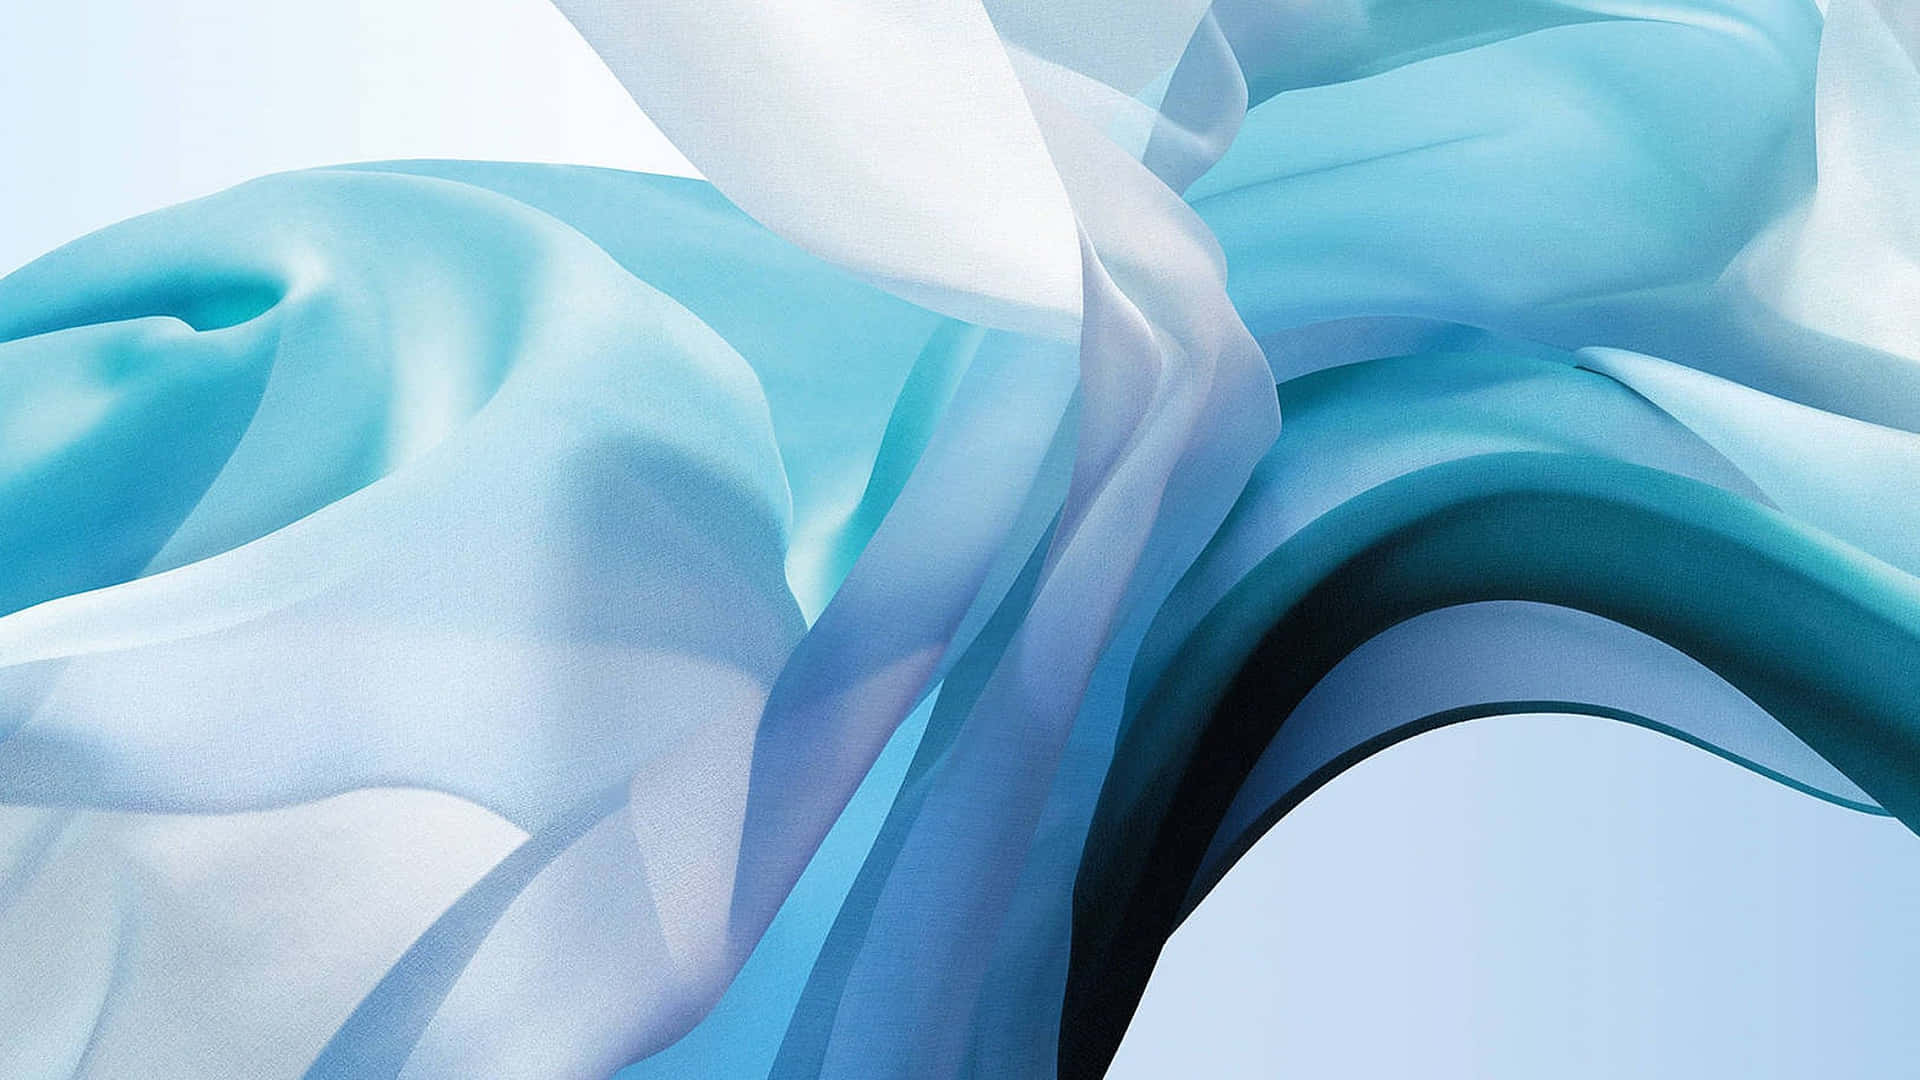 Abstract Blue Swirls Mac Book Air M2 Wallpaper Wallpaper